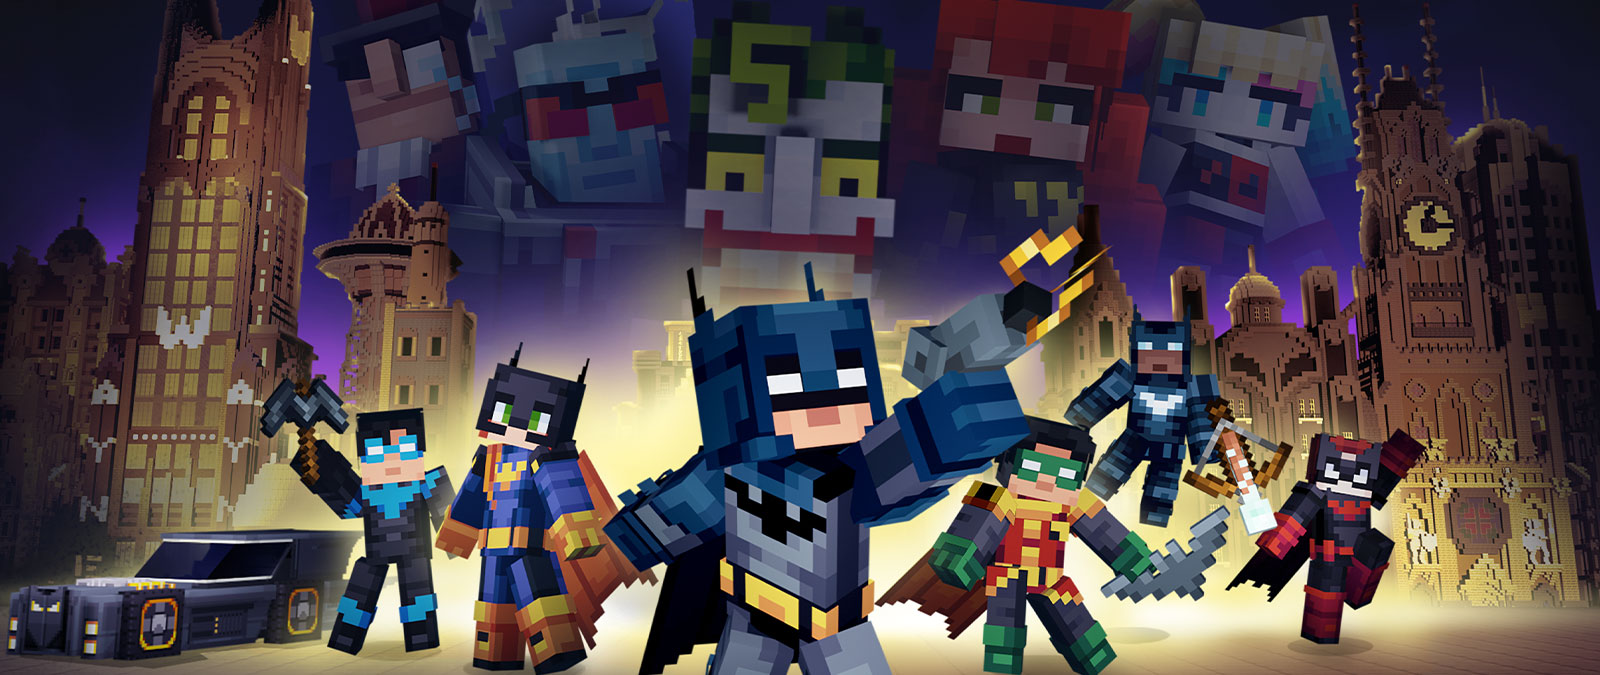 Batman y la familia de Batman posan junto a villanos con vistas a la Ciudad de Gotham de Minecraft.